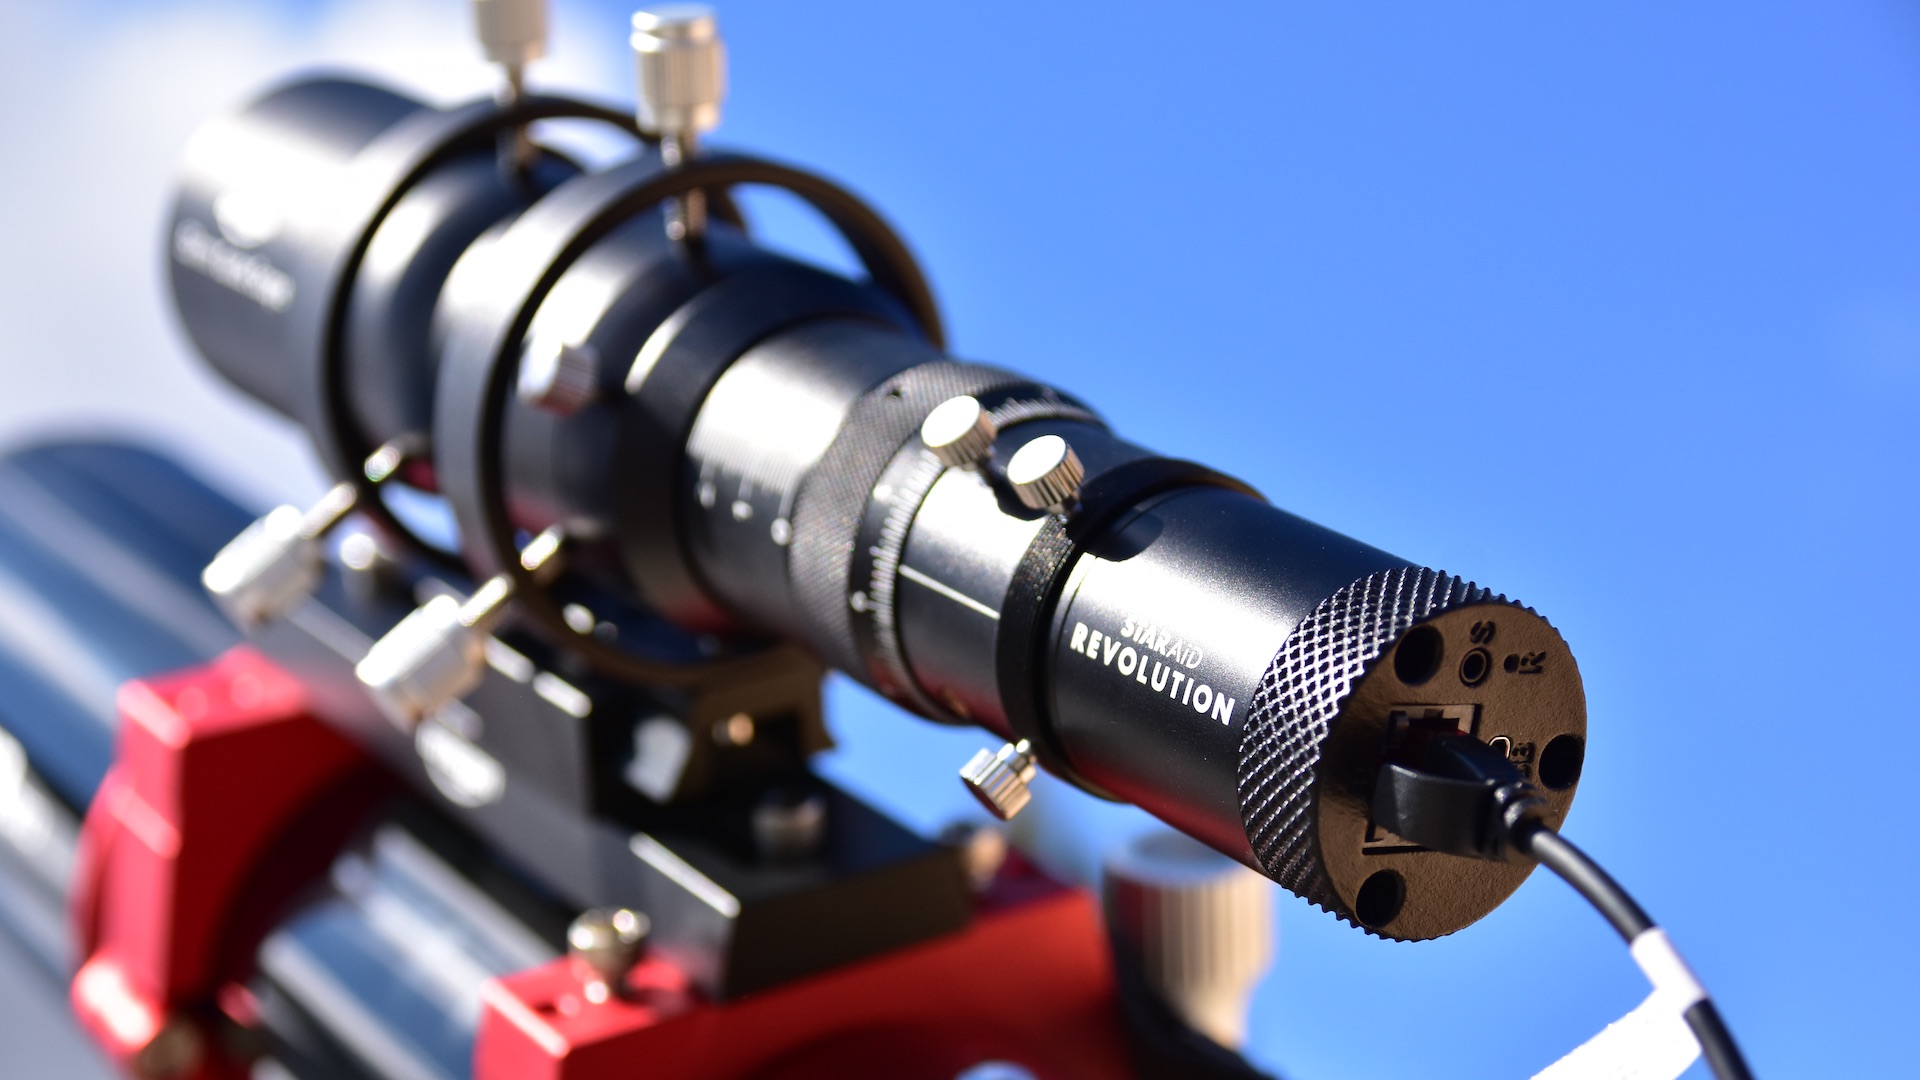 Autoguiagem autónoma: o caminho fácil para boas astrofotografias?